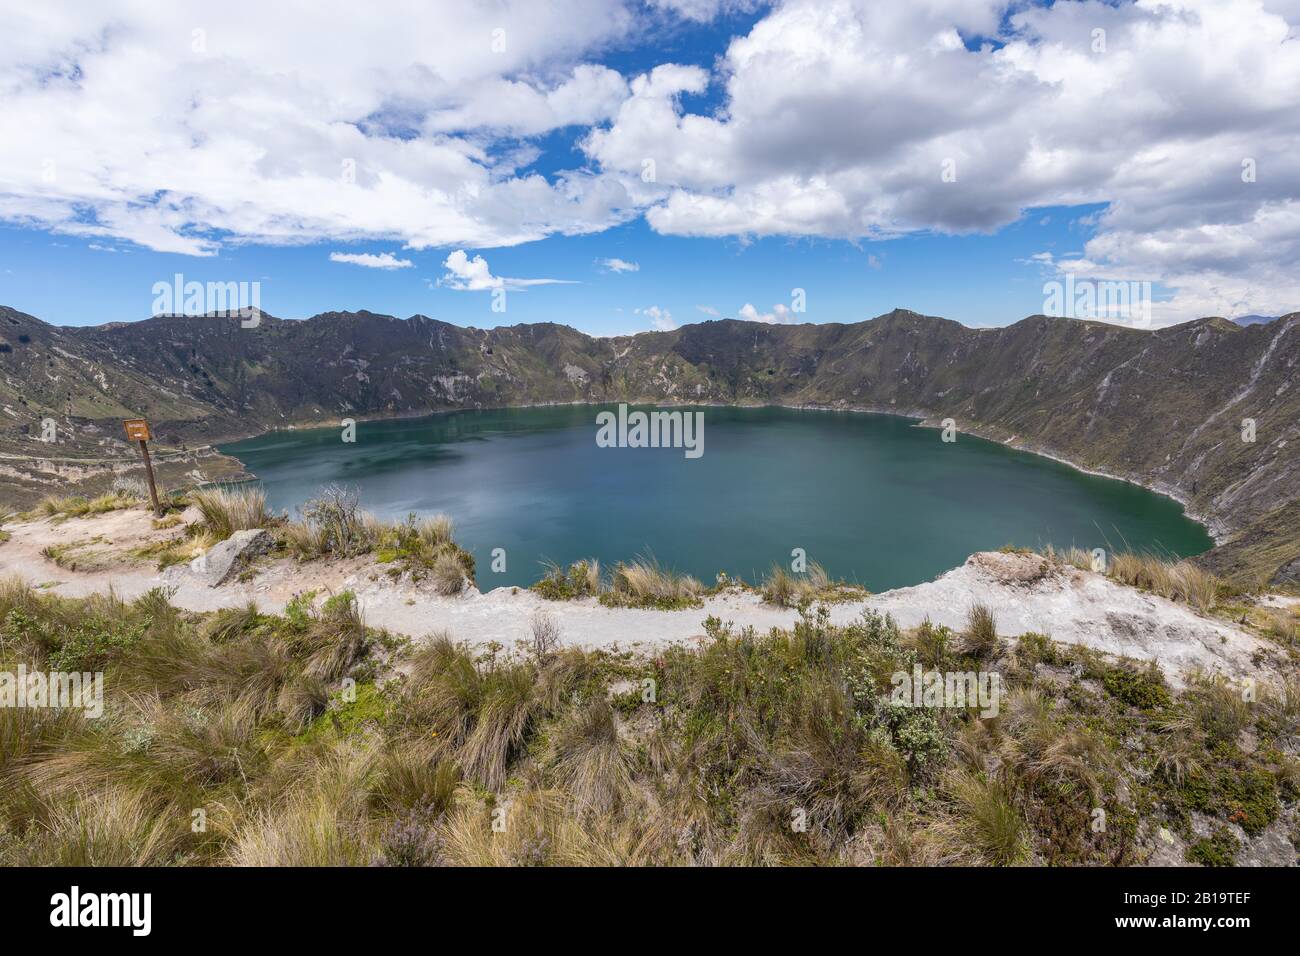 Lago Quilotoa. Panorama della laguna del cratere del vulcano turchese di Quilotoa, vicino Quito, regione andina dell'Ecuador. Foto Stock